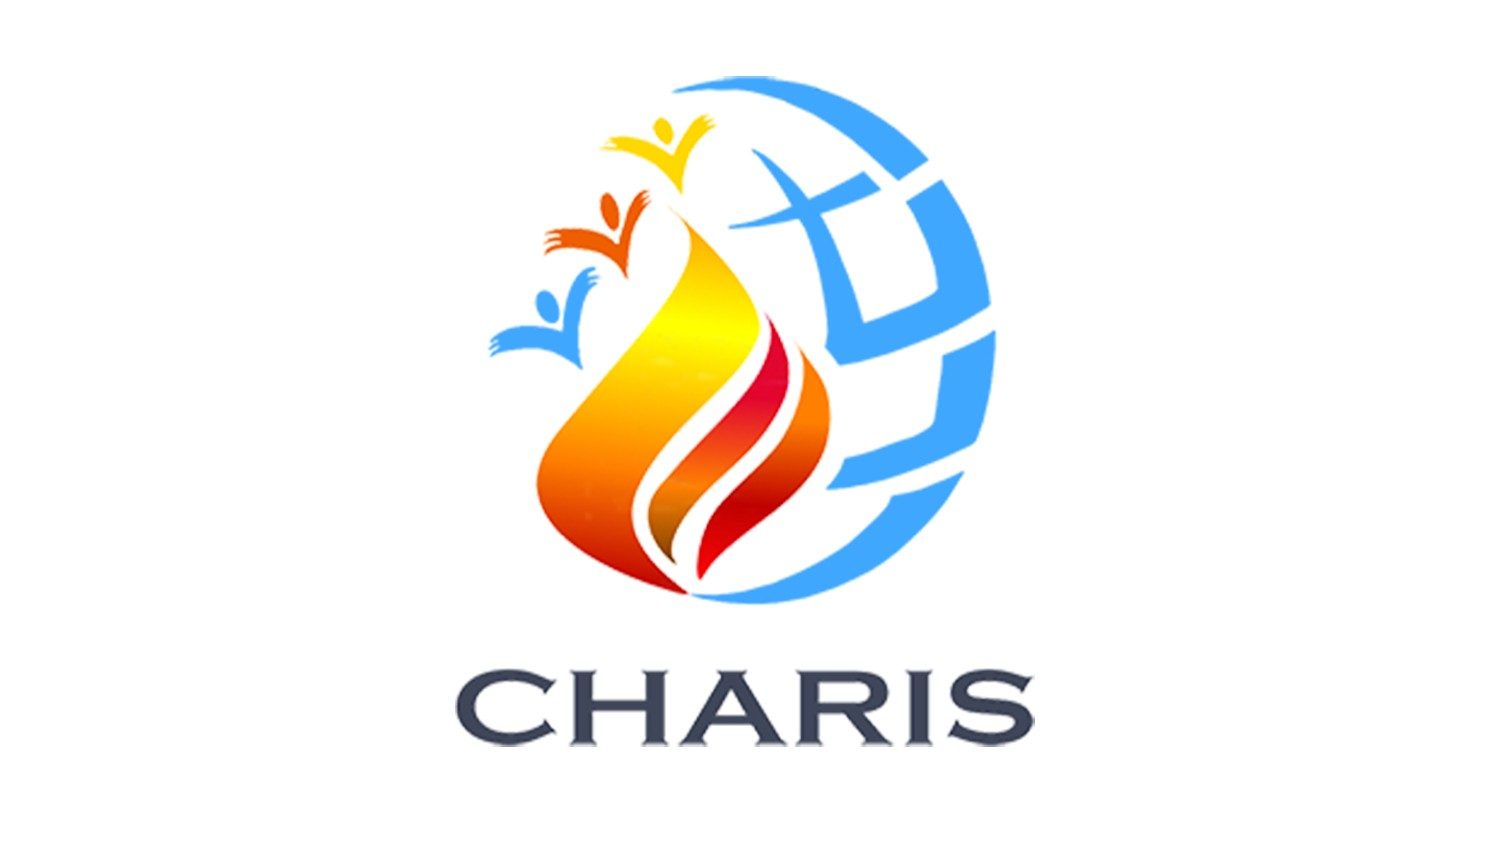 En este momento estás viendo CHARIS, un servicio creado hace un año por el Papa Francisco.